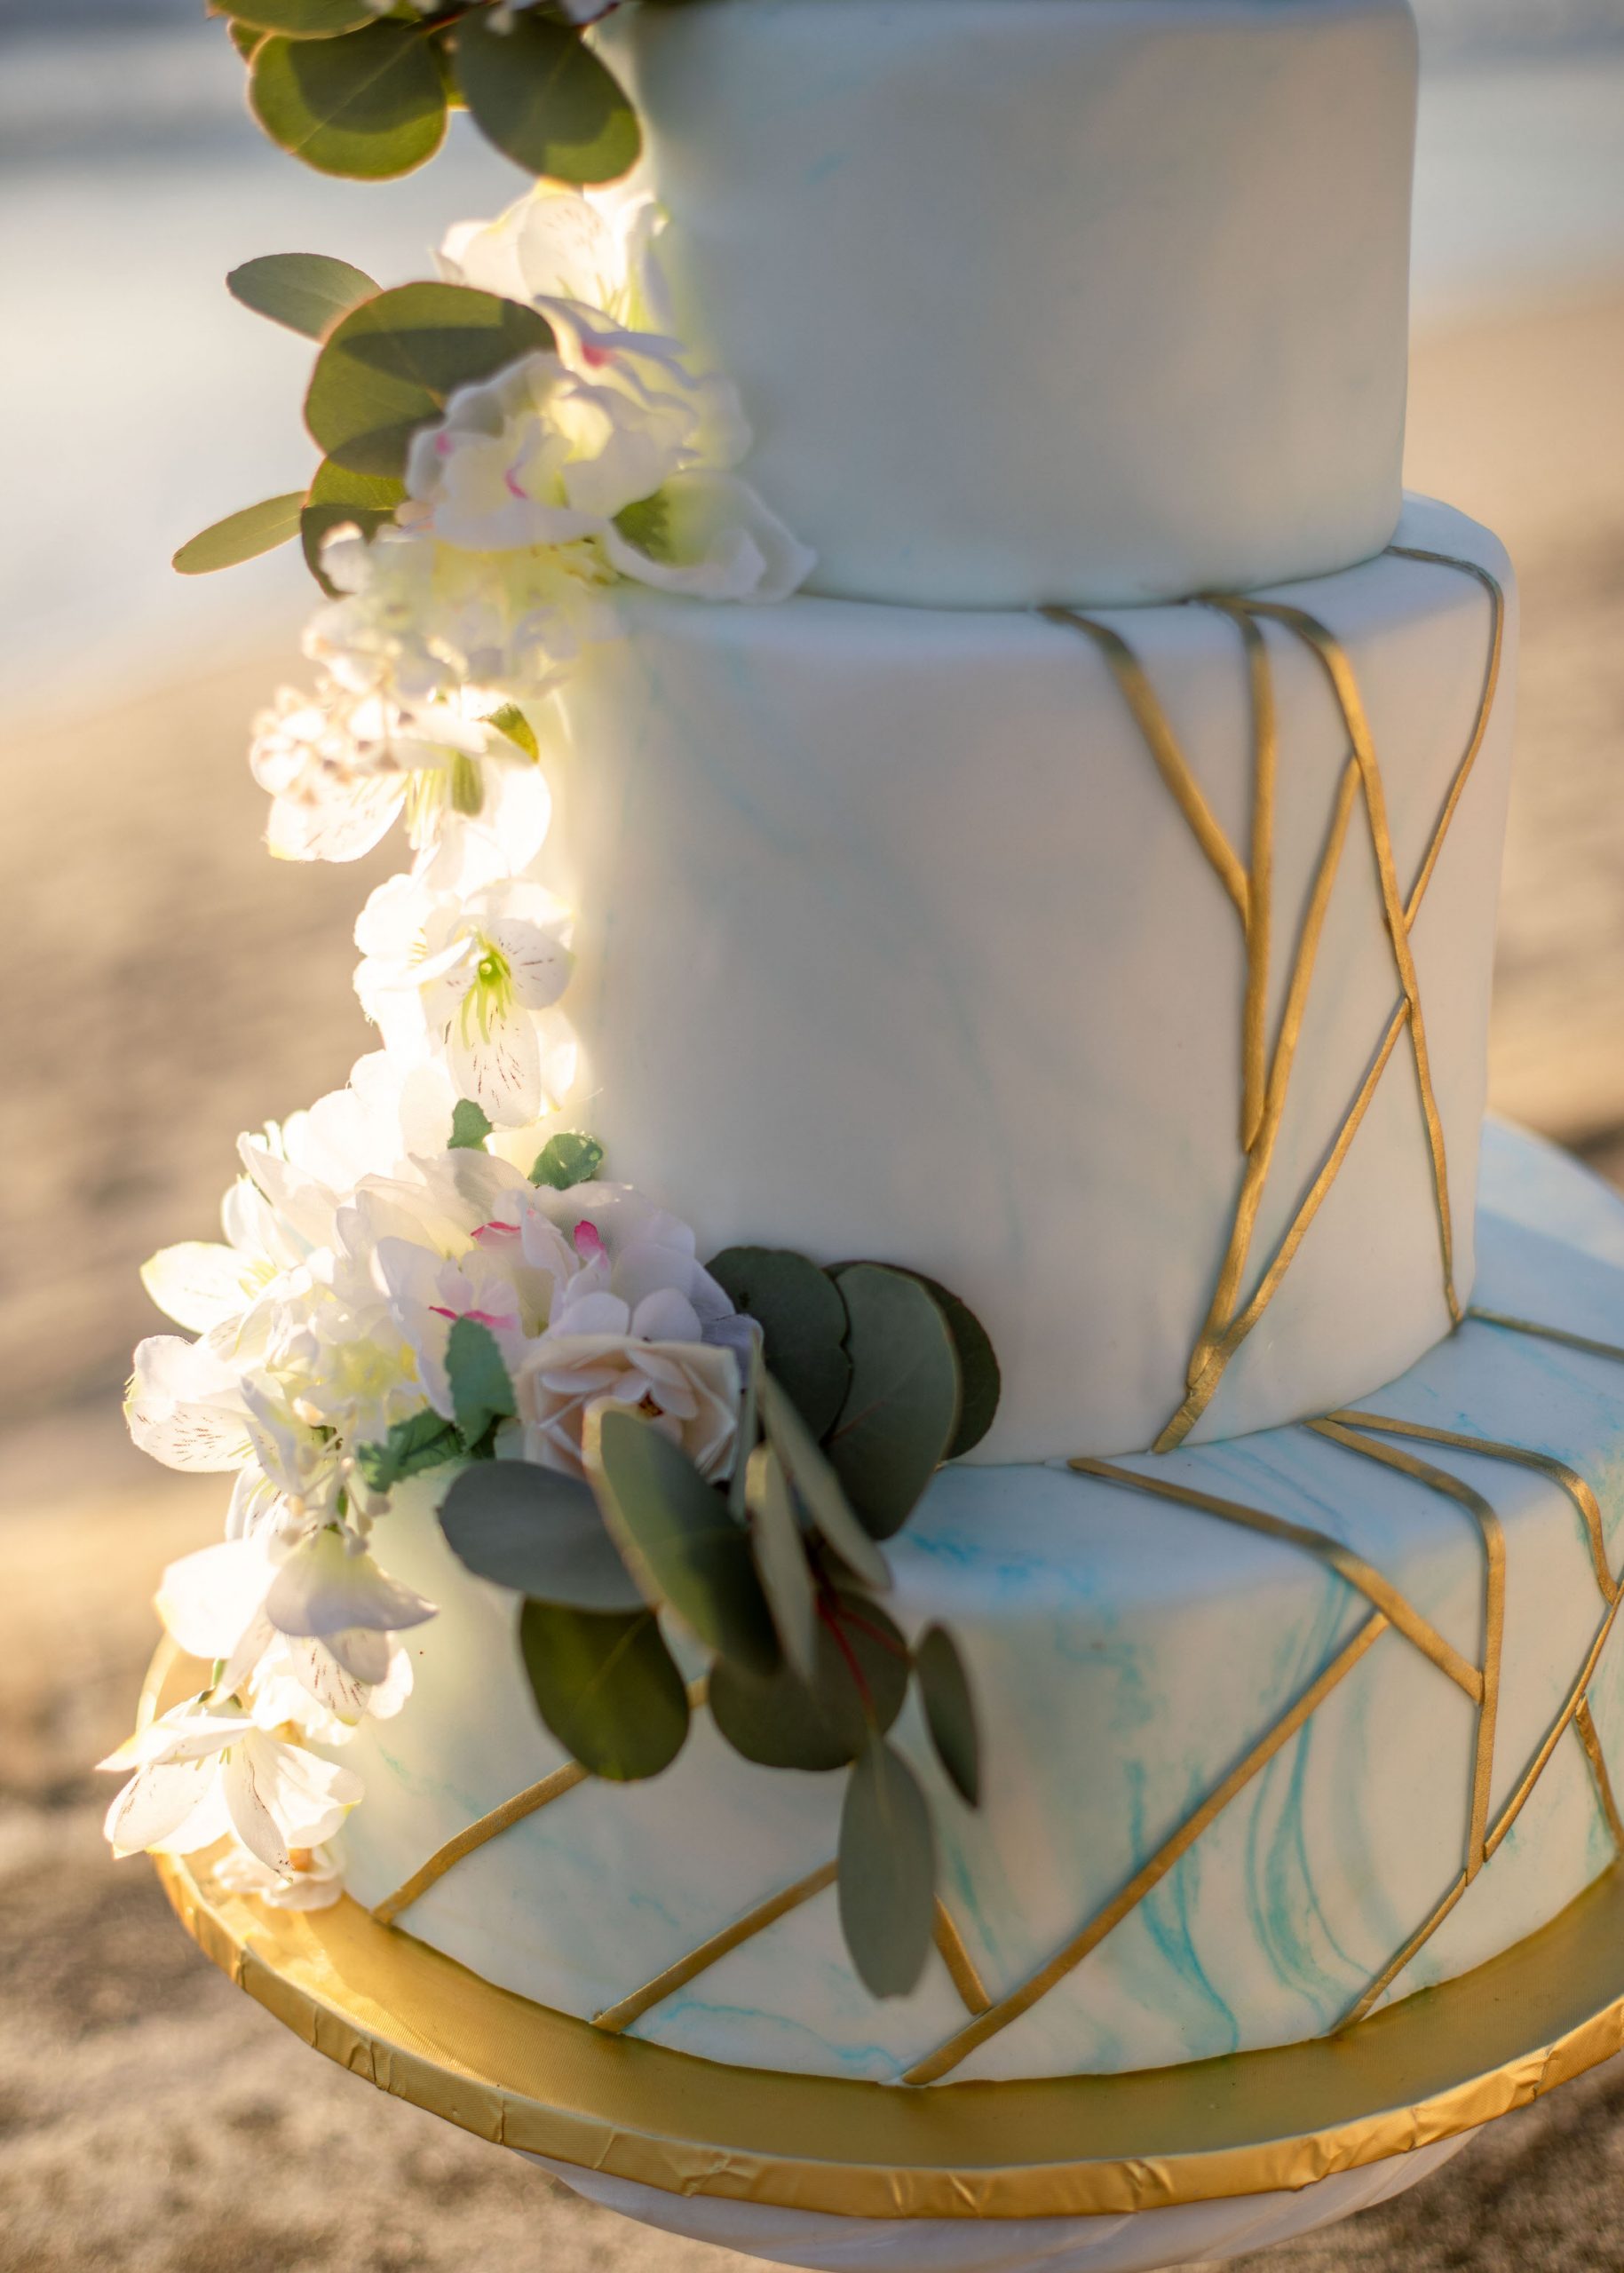 Wedding cake for Beach Elopement at Windansea Beach La Jolla, California.